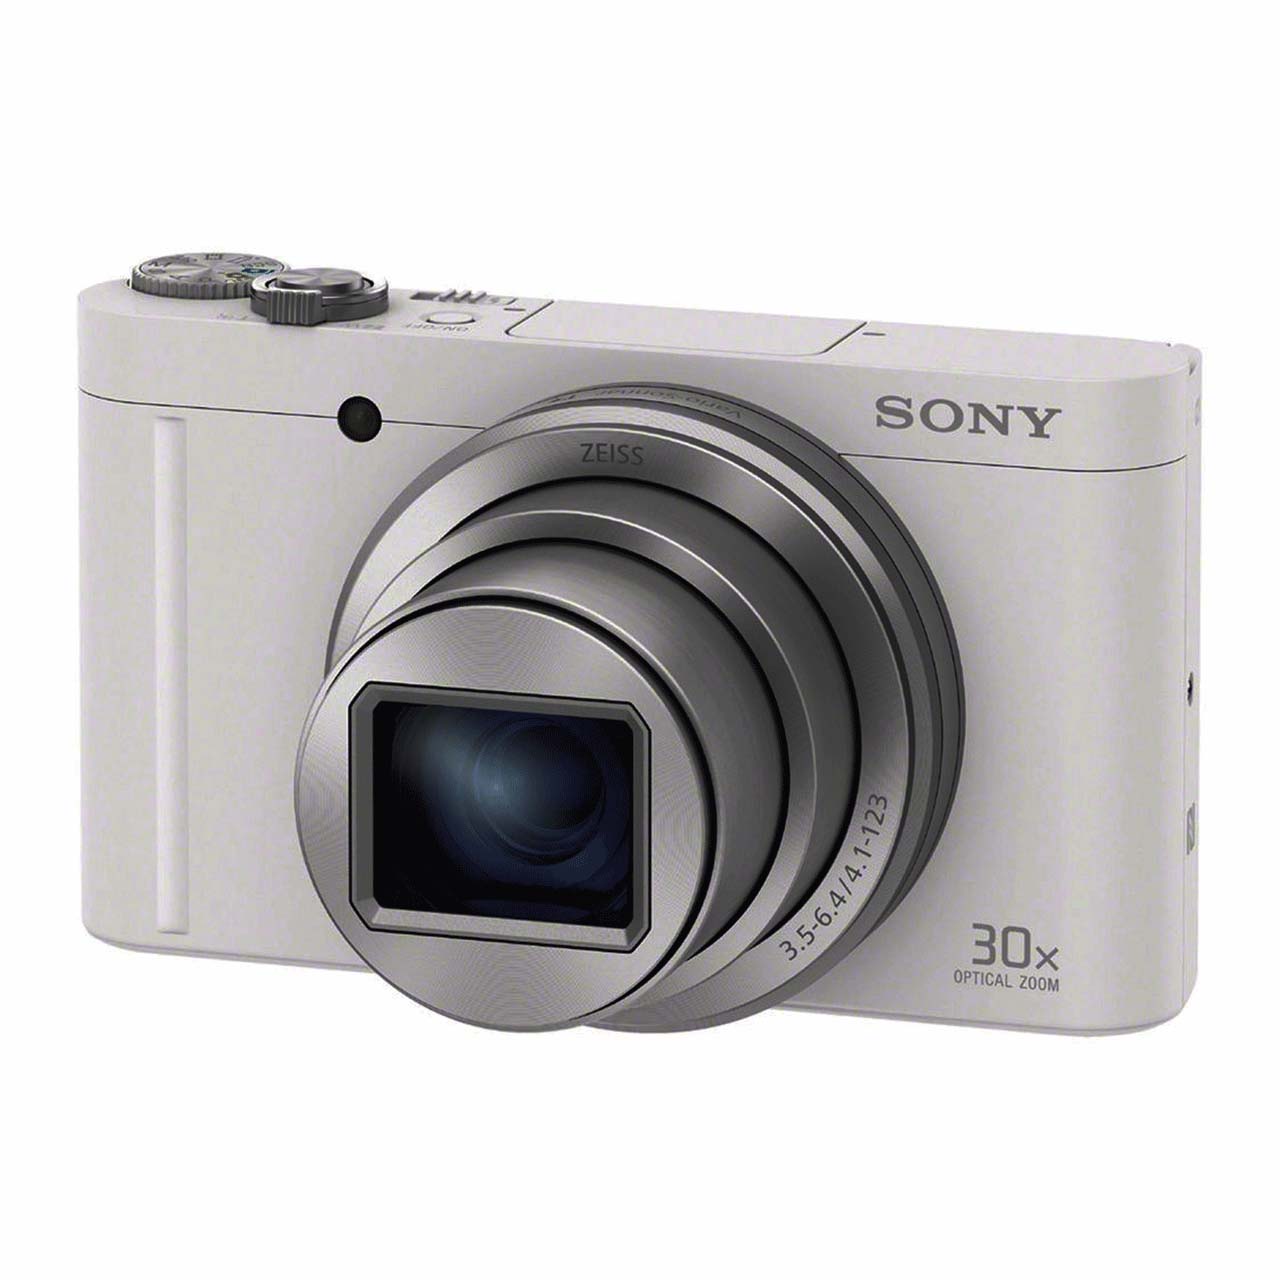 Sony-WX500-Digital-Camera-1db28a